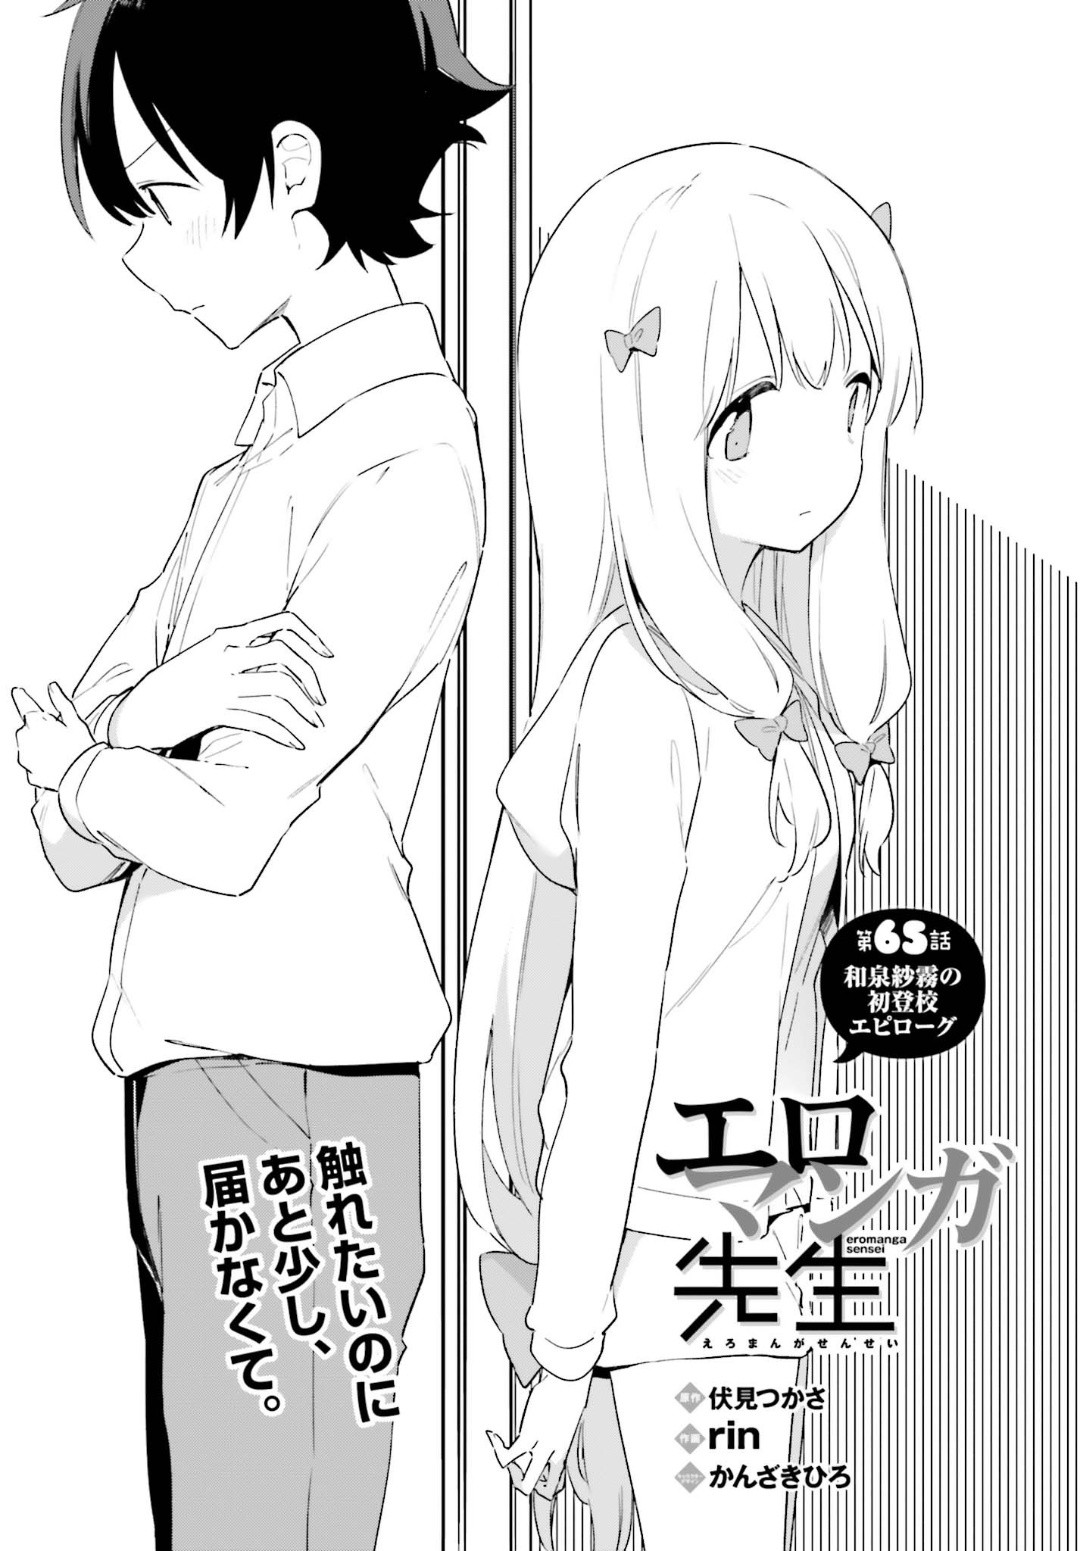 Ero Manga Sensei - Chapter 65 - Page 4